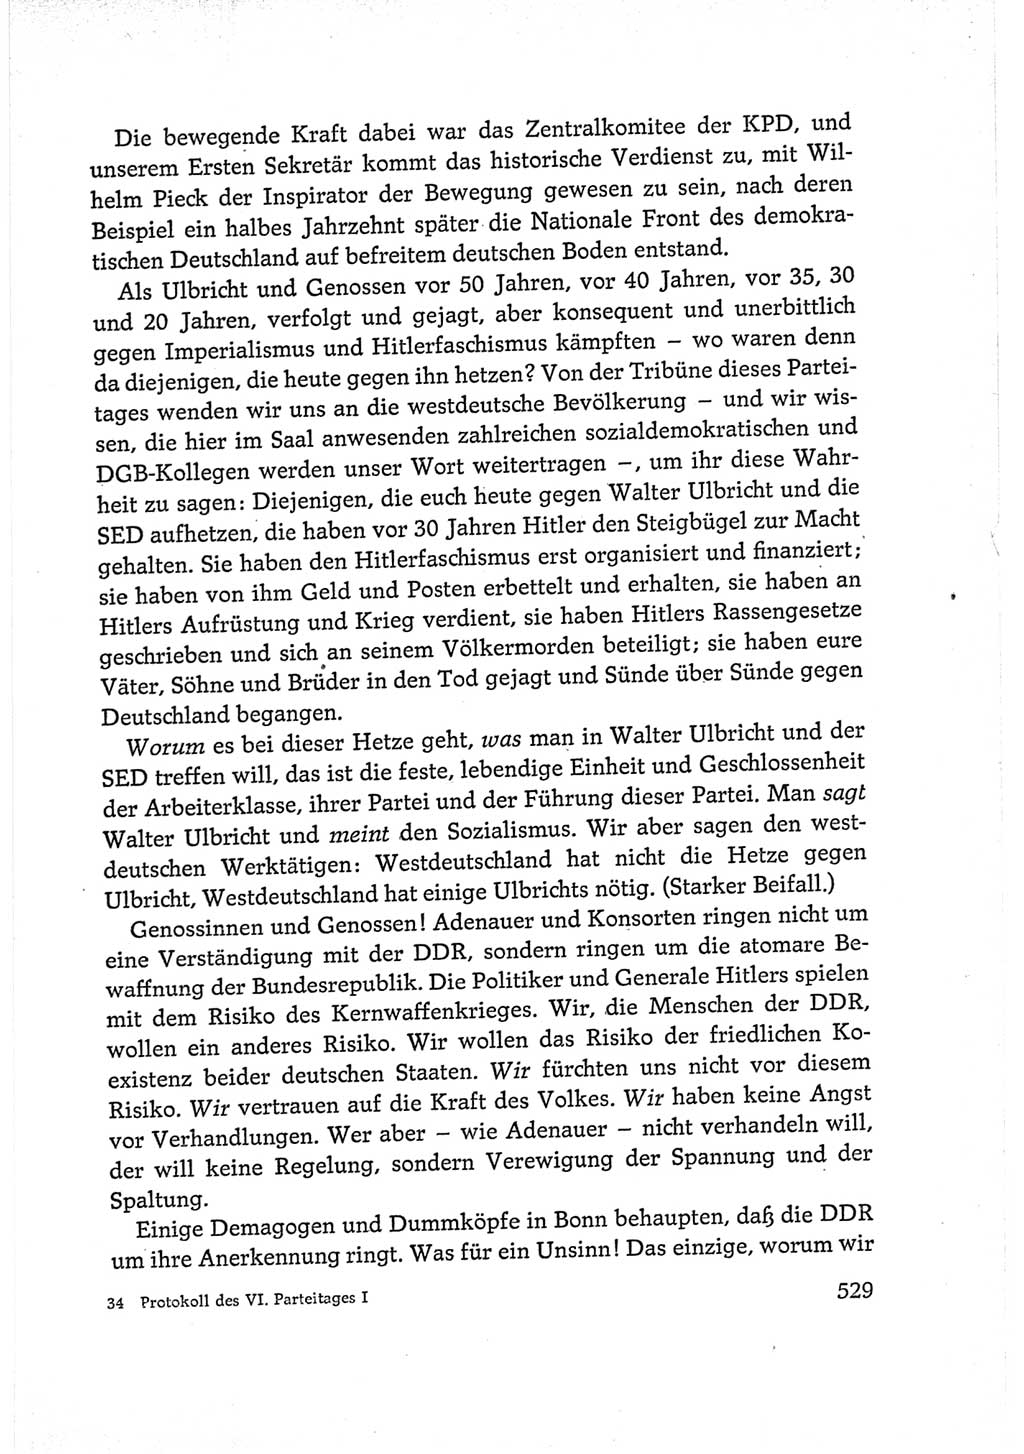 Protokoll der Verhandlungen des Ⅵ. Parteitages der Sozialistischen Einheitspartei Deutschlands (SED) [Deutsche Demokratische Republik (DDR)] 1963, Band Ⅰ, Seite 529 (Prot. Verh. Ⅵ. PT SED DDR 1963, Bd. Ⅰ, S. 529)